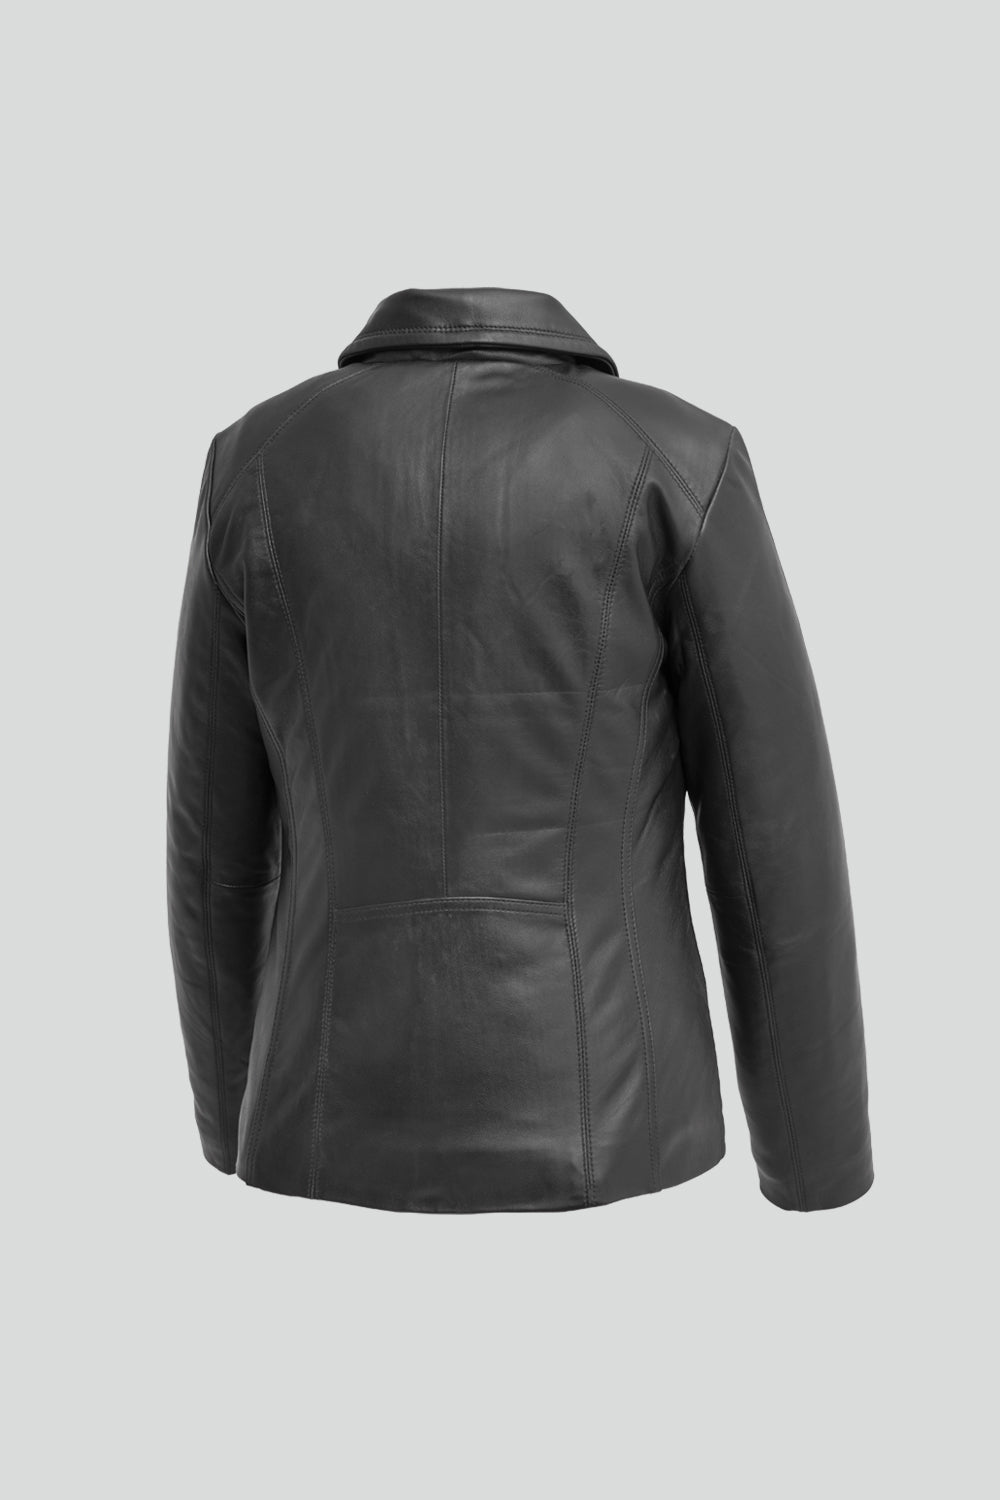 Imelda - A ladies lambskin leather jacket